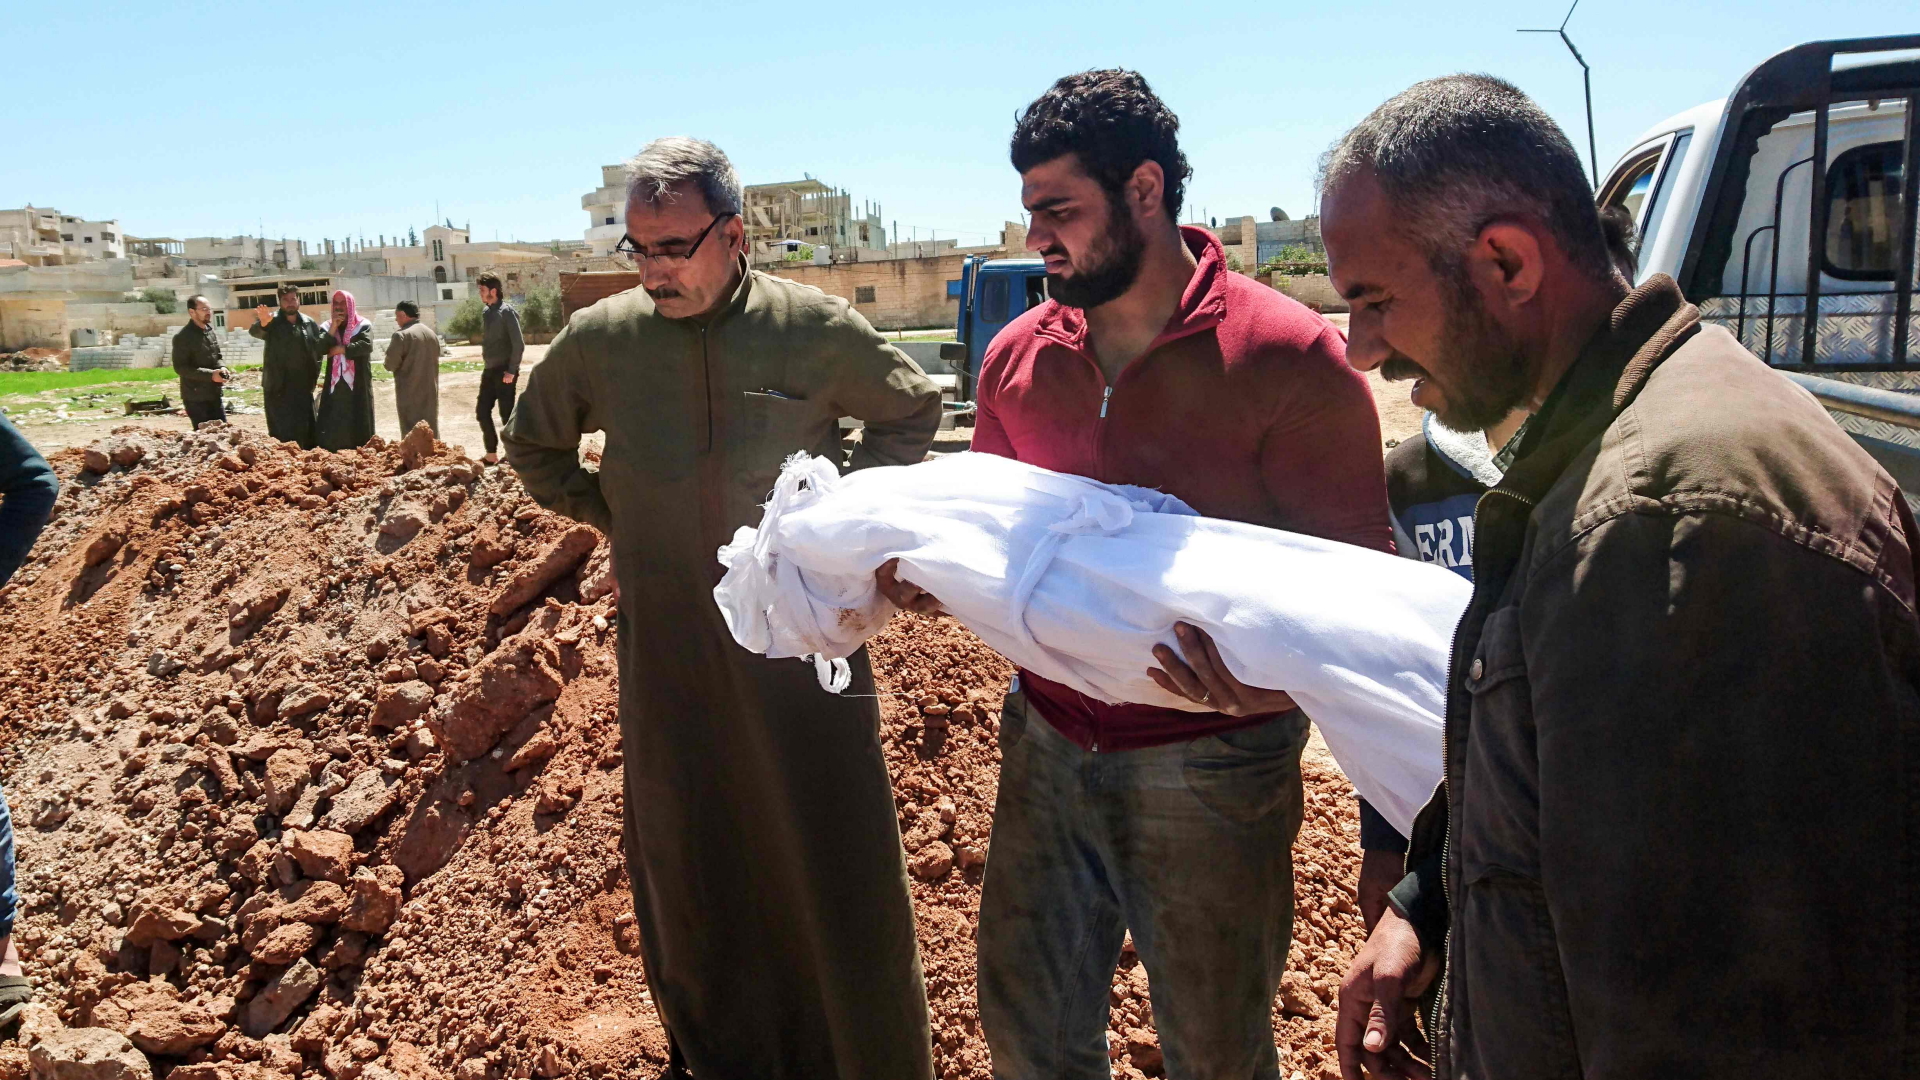 Syrer beerdigen Opfer der Giftgasattacke in Chan Scheichun | AFP